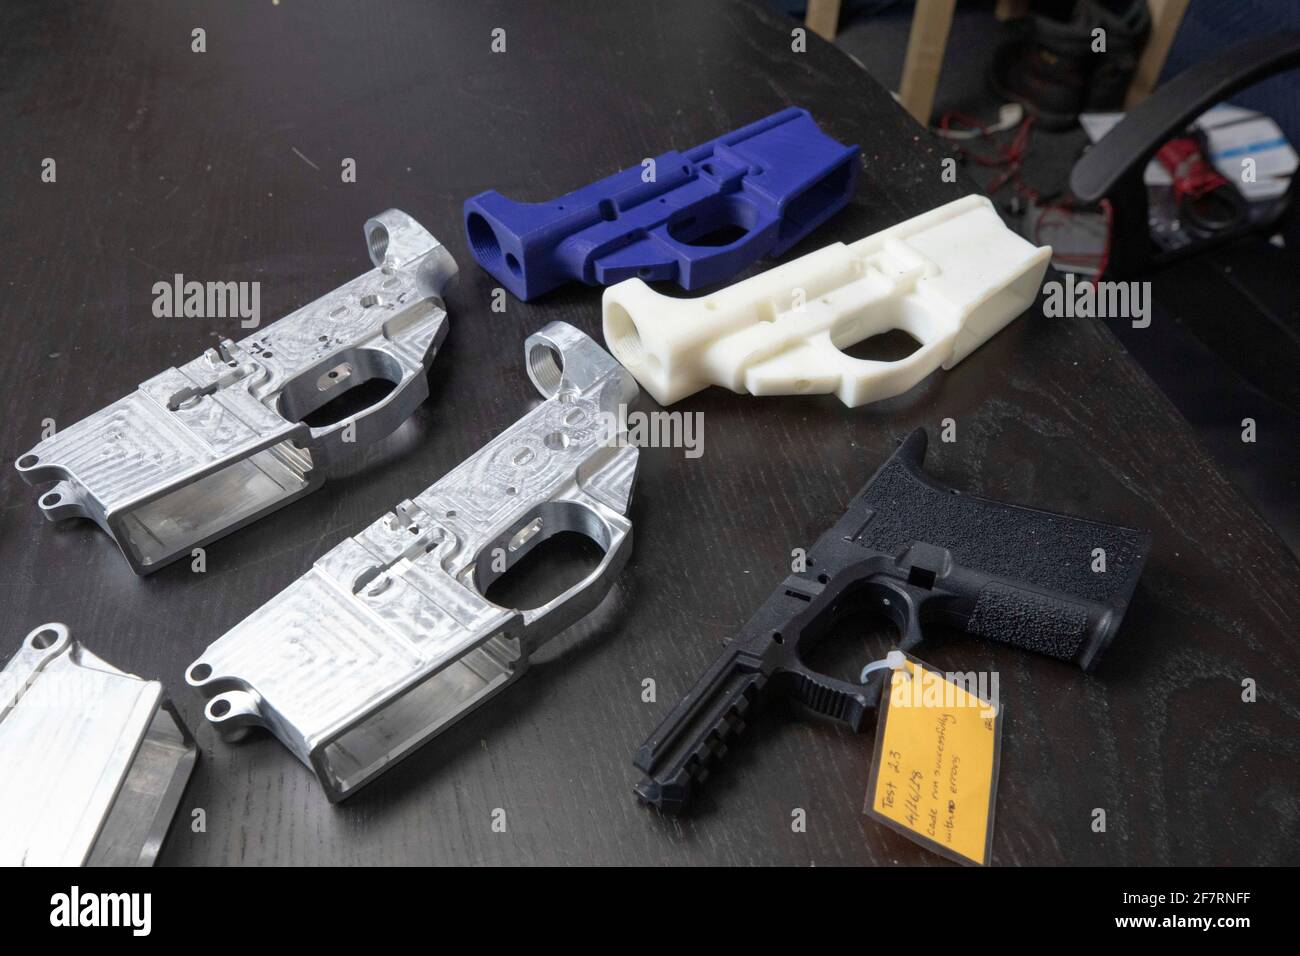 Les pièces de pistolet en métal et en plastique 3D sont situées sur une table au bureau de Defense Distributed, une société basée au Texas qui développe et publie des conceptions de canon en 3D open source. Malgré des problèmes juridiques graves en 2018, l'ancien PDG Cody Wilson est toujours en activité à la tête d'une autre société texane appelée Ghost Gunner, Inc Banque D'Images